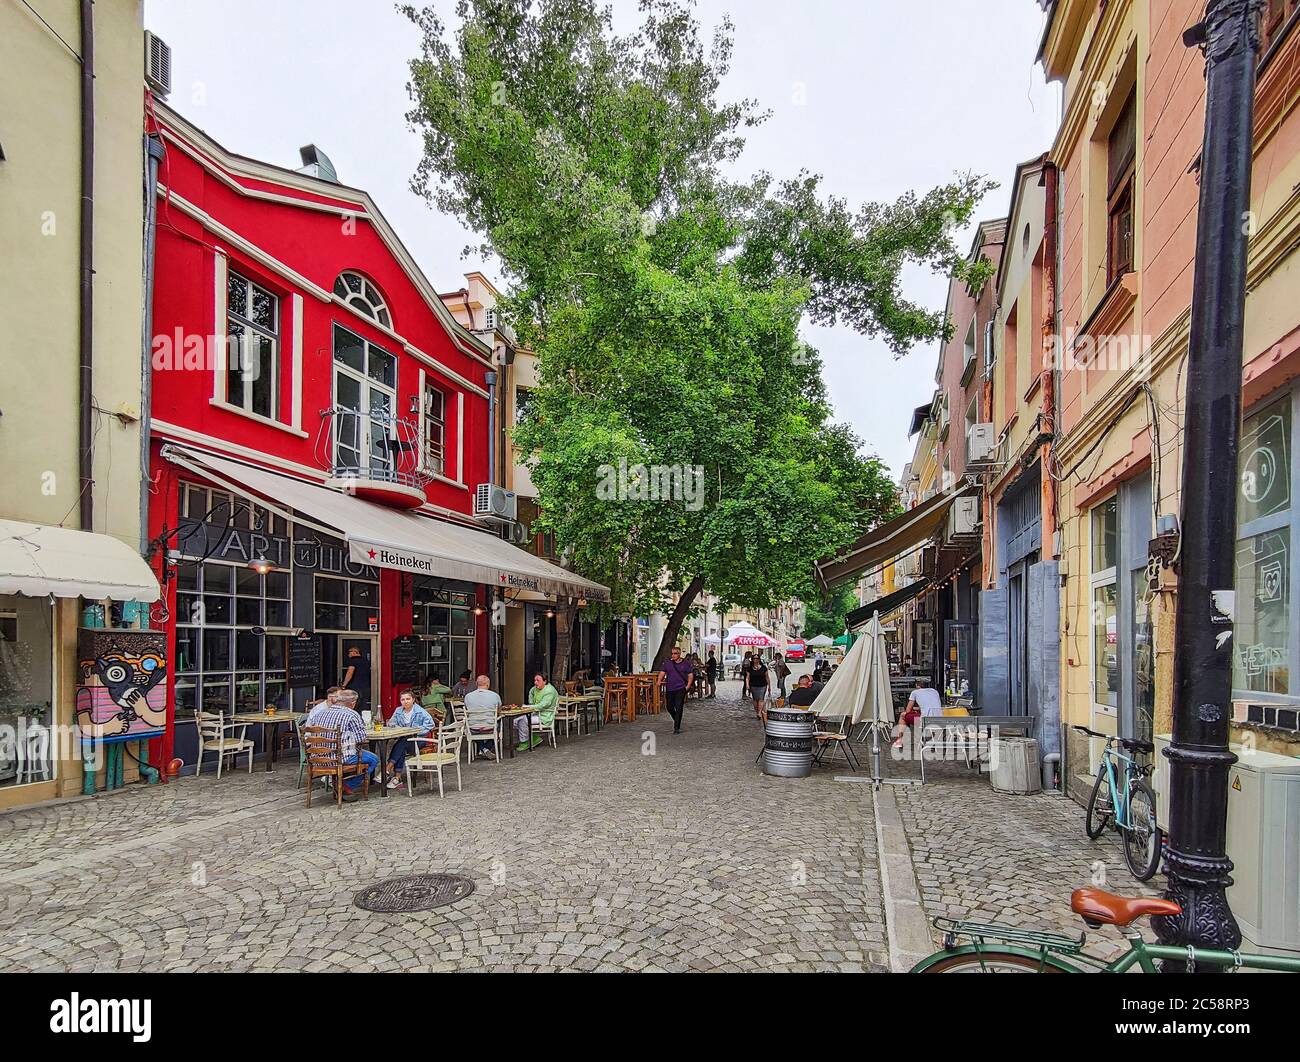 PLOVDIV, BULGARIEN - 19. MAI 2020: Typische Straße und Häuser in der Fußgängerzone der Stadt Plovdiv, Bulgarien Stockfoto